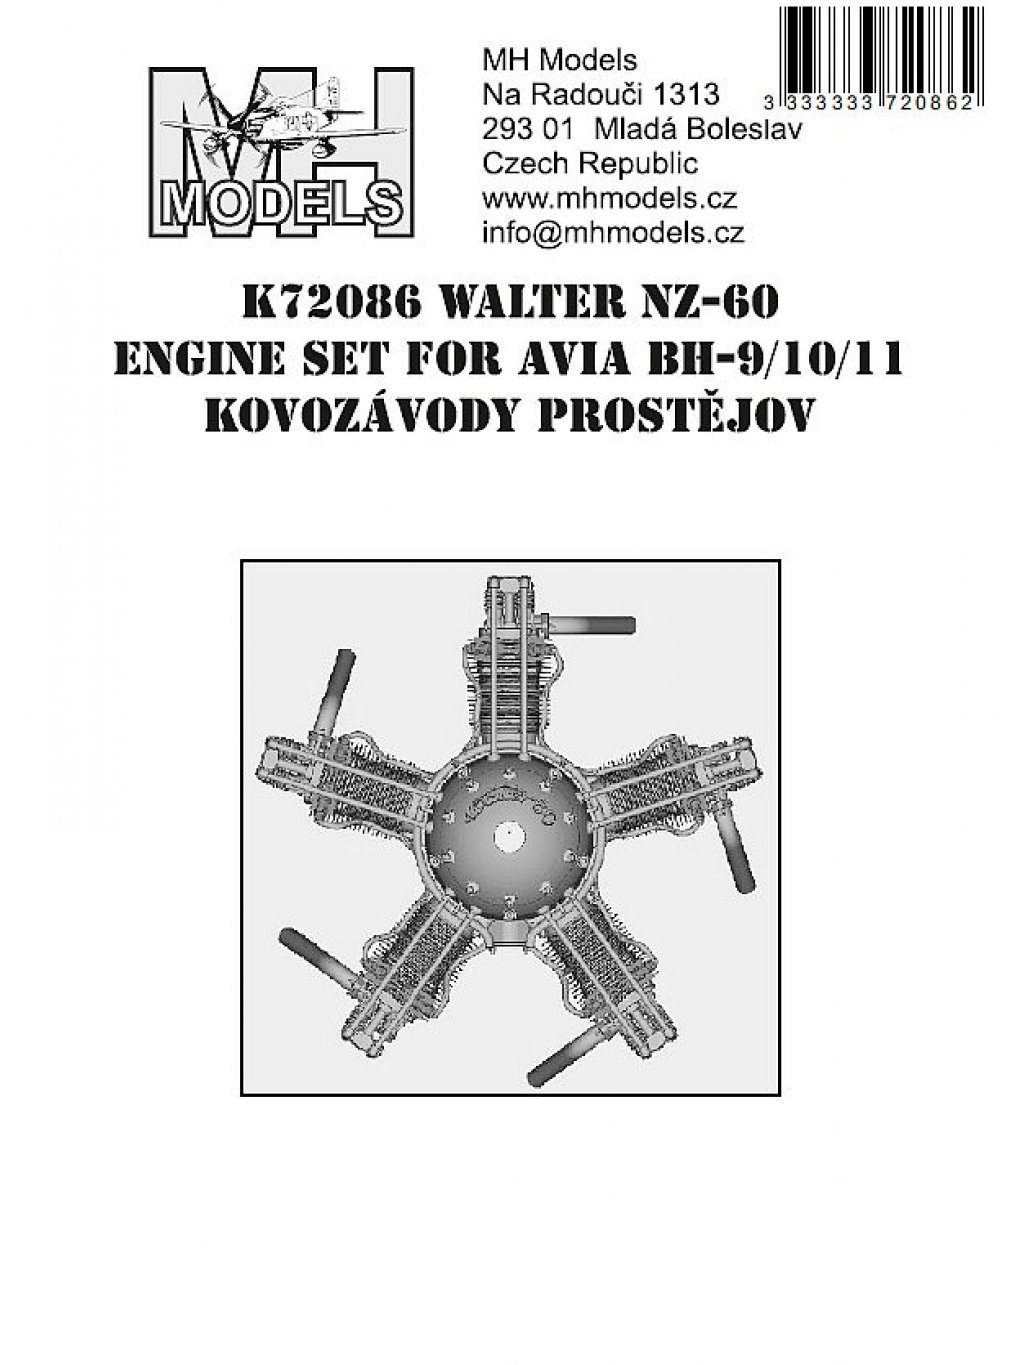 Walter NZ-60 engine set for Avia BH-9/10/11 Kovozávody Prostějov